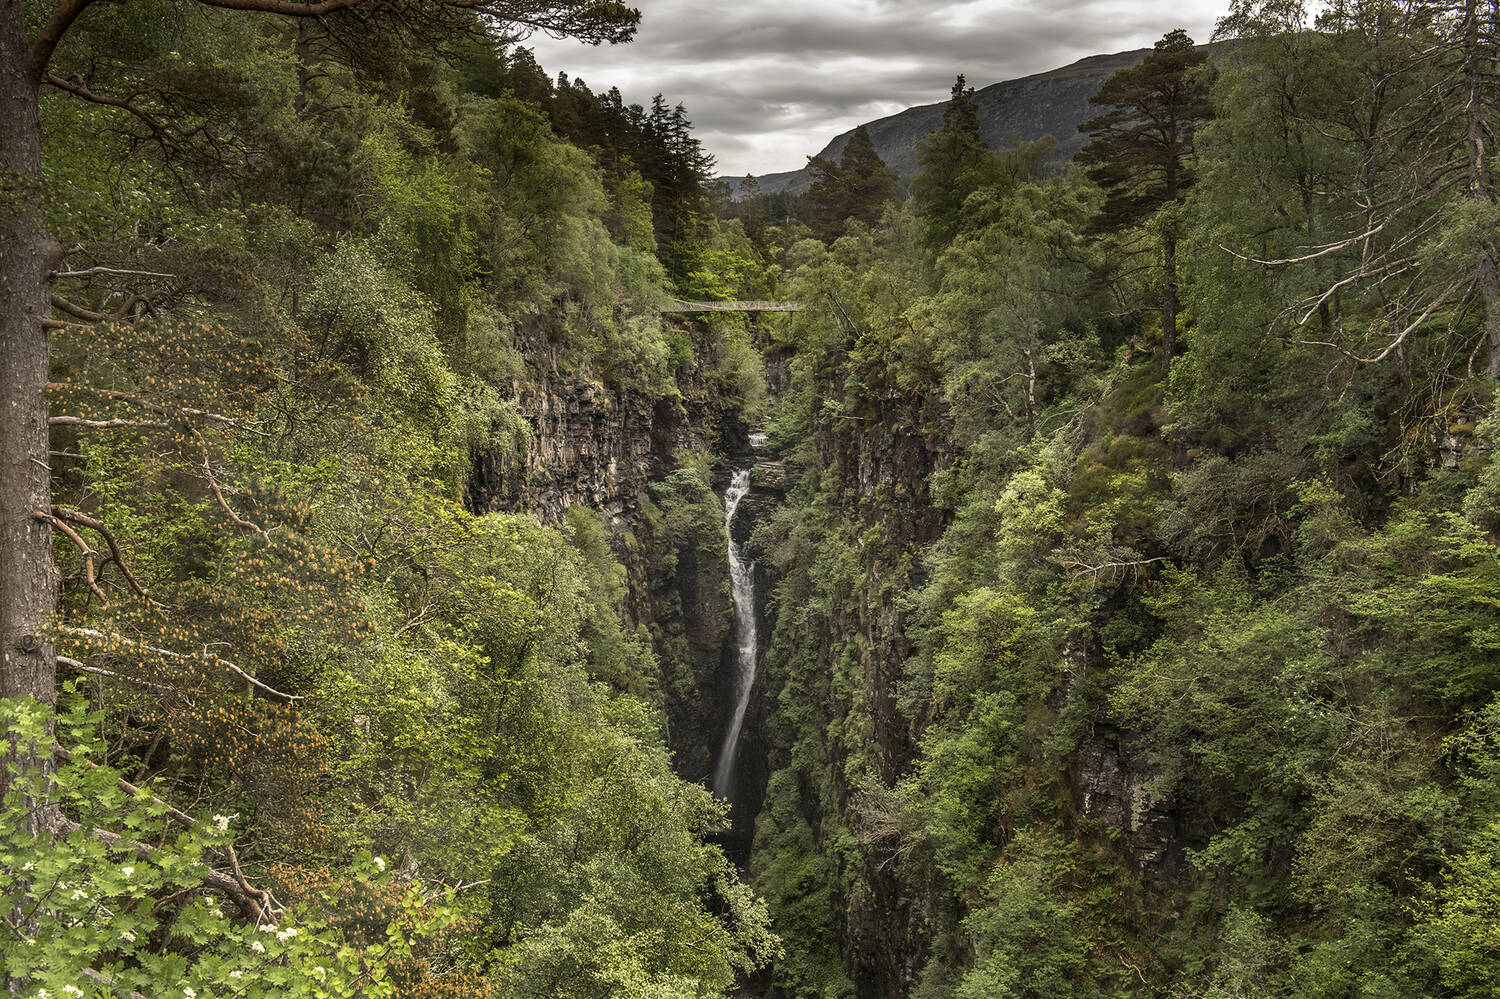 A waterfall cascades through a deep ravine.